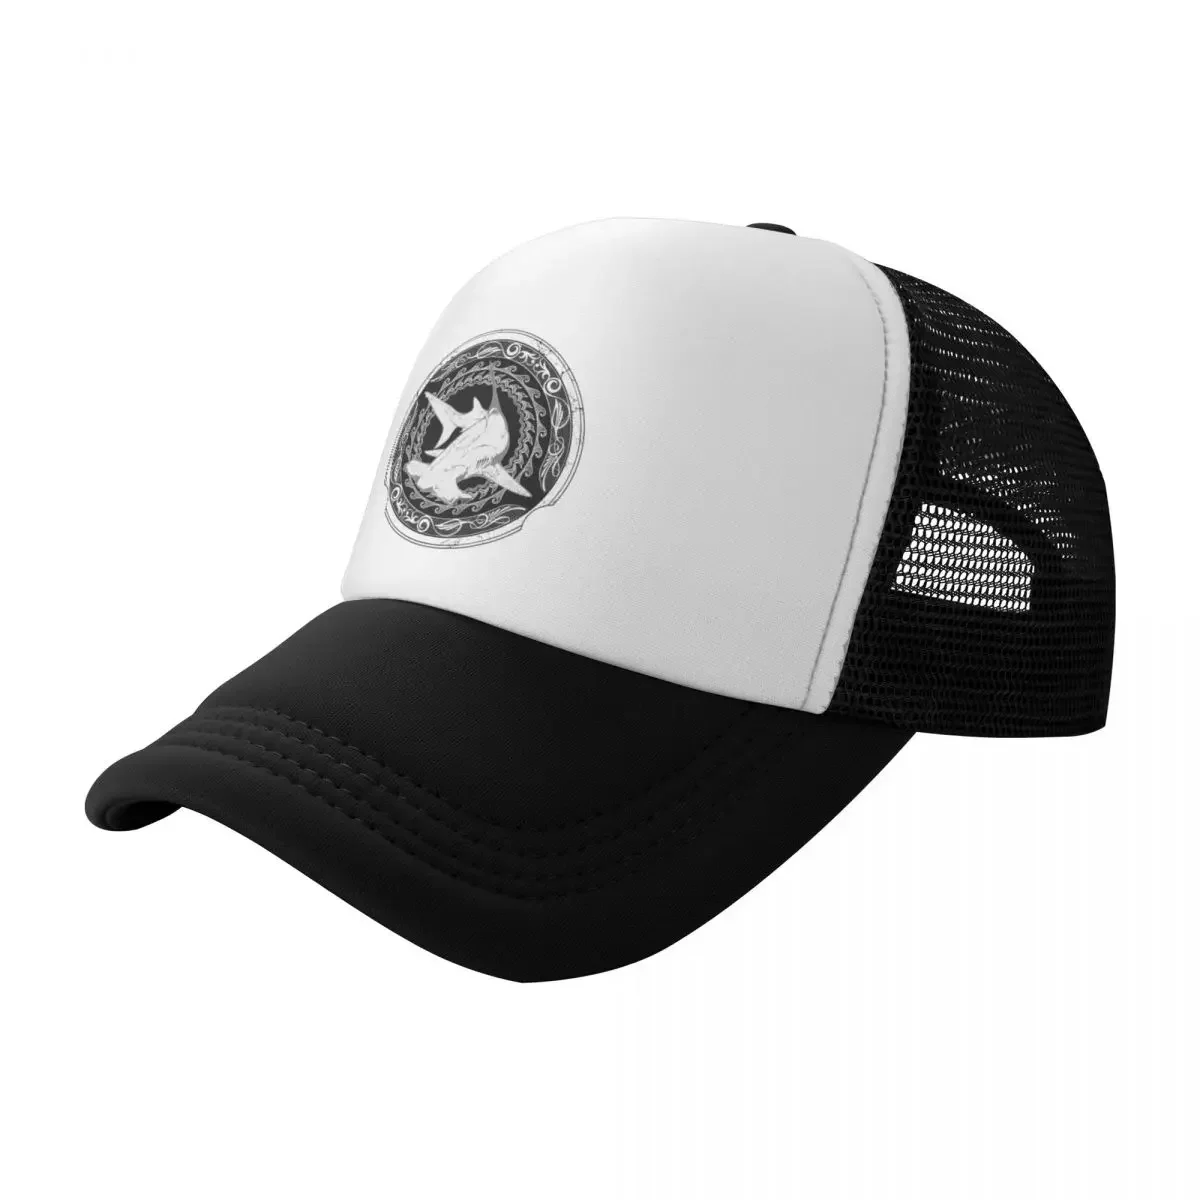 

Bimini Bahamas Hammerhead Shark Baseball Cap Ball Cap hard hat Dropshipping Caps For Men Women's